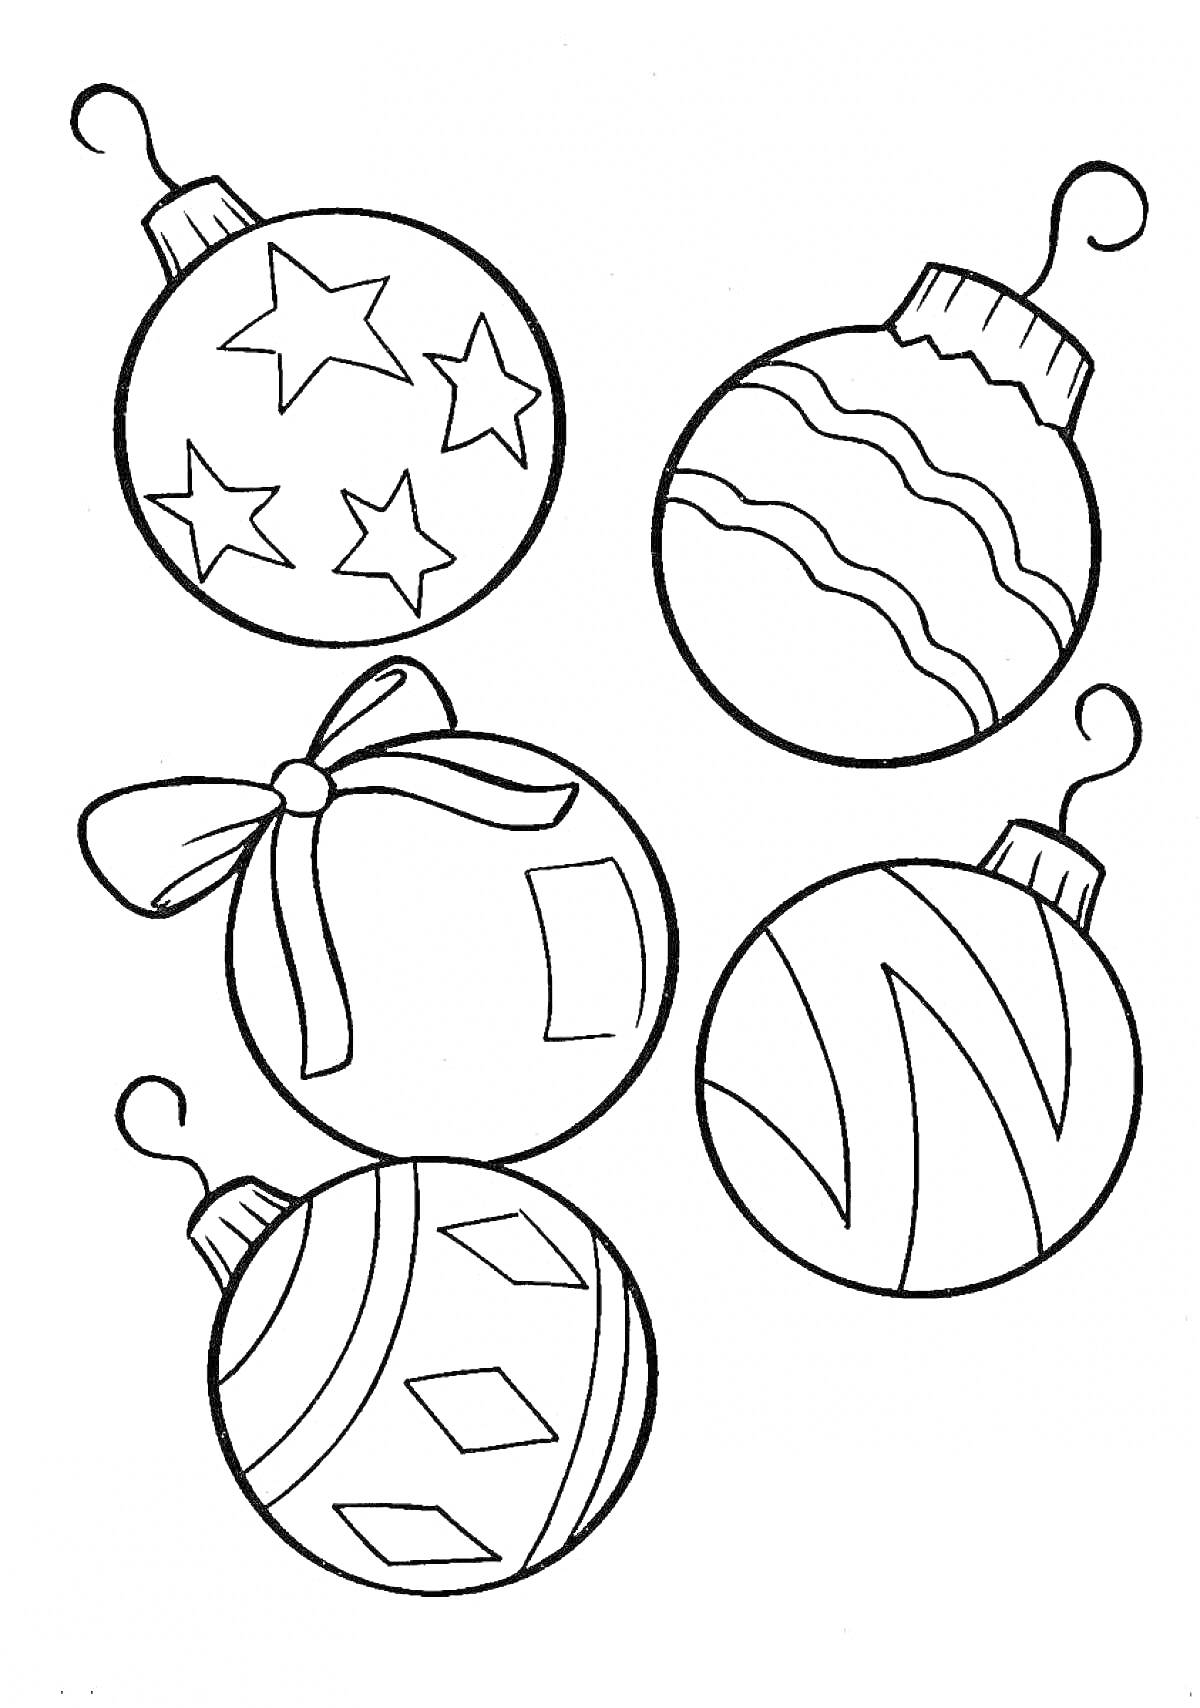 Раскраска Пять новогодних игрушек-шаров с узорами звезд, волнами, бантом, зигзагами и ромбами